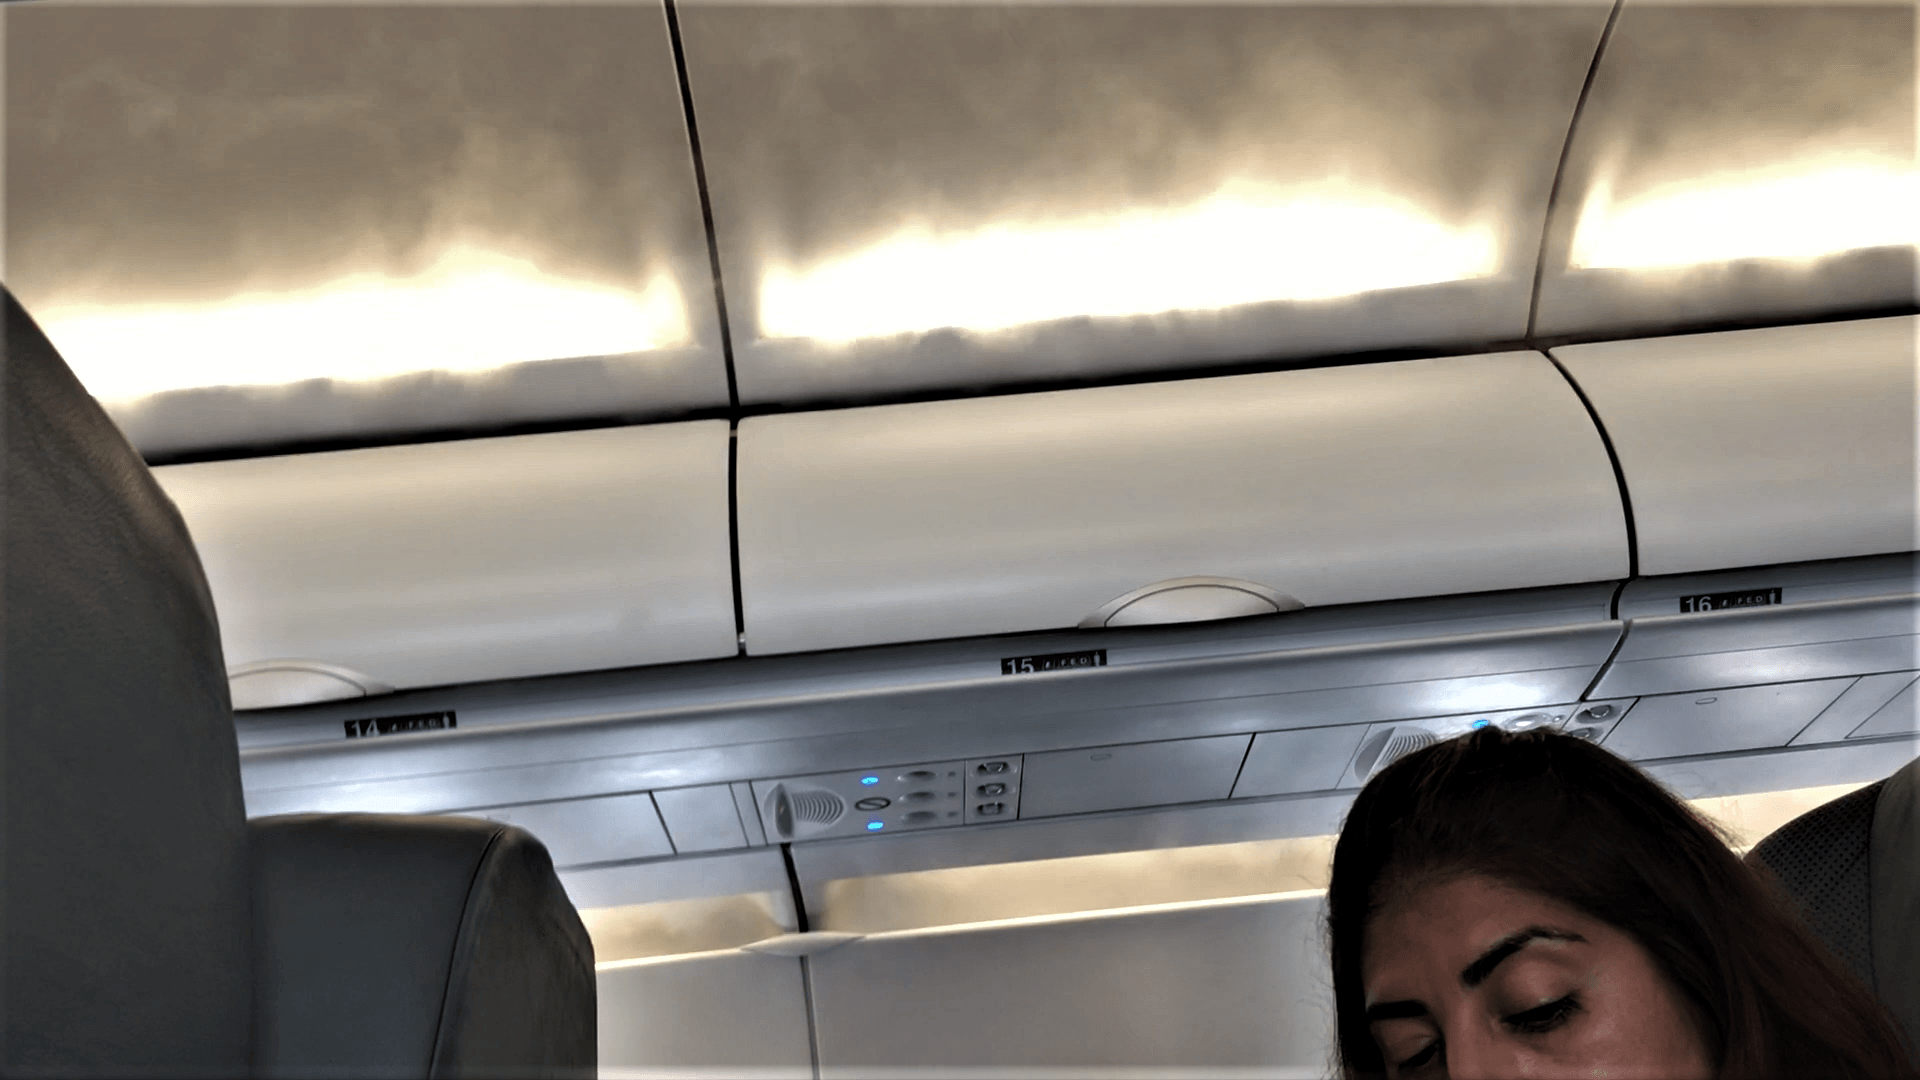 Interjet flight report water vapors